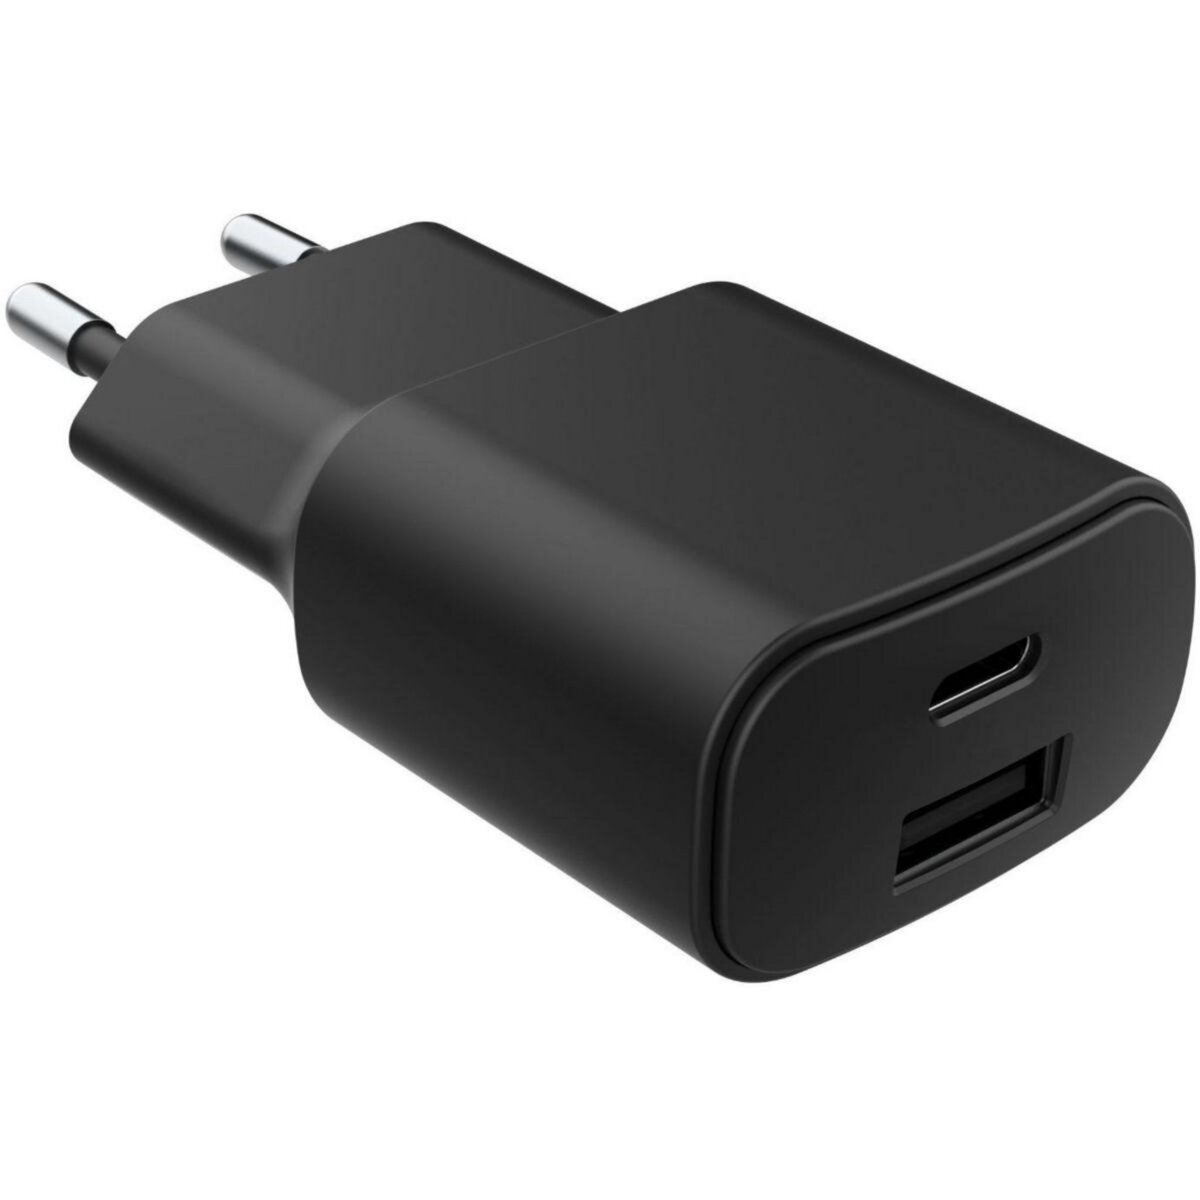 Un chargeur USB-C pour iPhone et smartphone Android à 6,99 € ? Oui